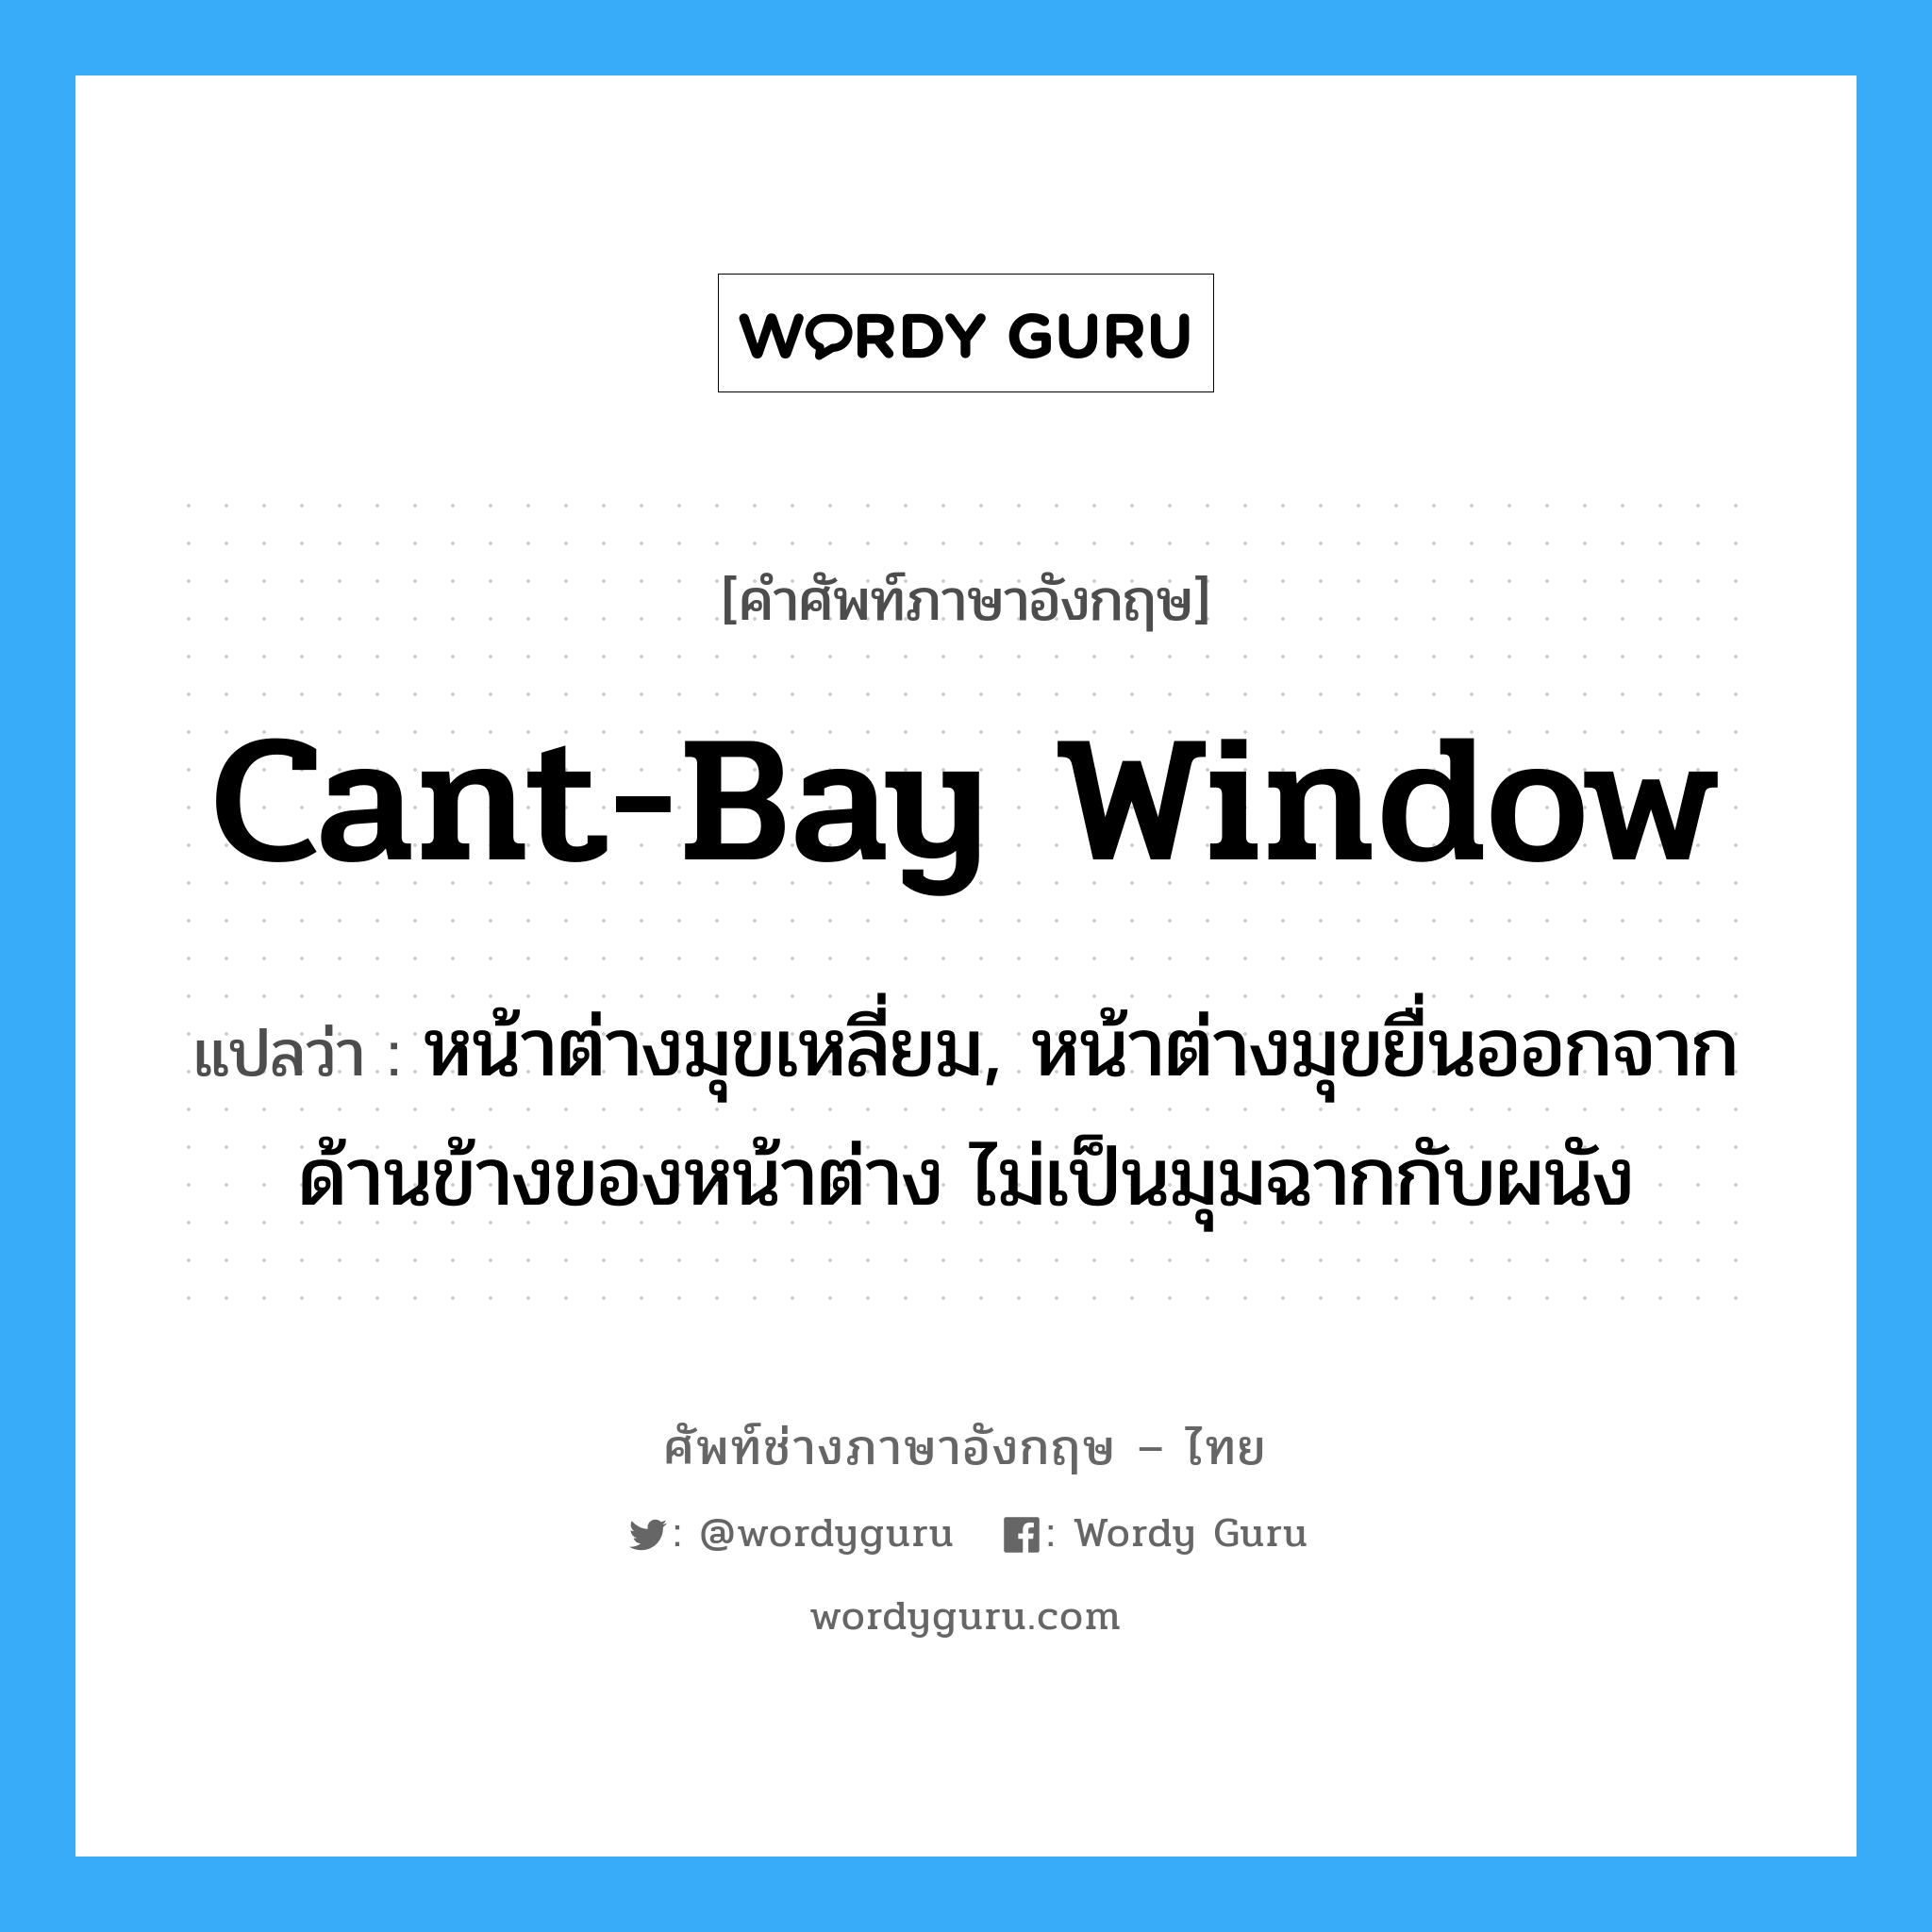 cant-bay window แปลว่า?, คำศัพท์ช่างภาษาอังกฤษ - ไทย cant-bay window คำศัพท์ภาษาอังกฤษ cant-bay window แปลว่า หน้าต่างมุขเหลี่ยม, หน้าต่างมุขยื่นออกจากด้านข้างของหน้าต่าง ไม่เป็นมุมฉากกับผนัง